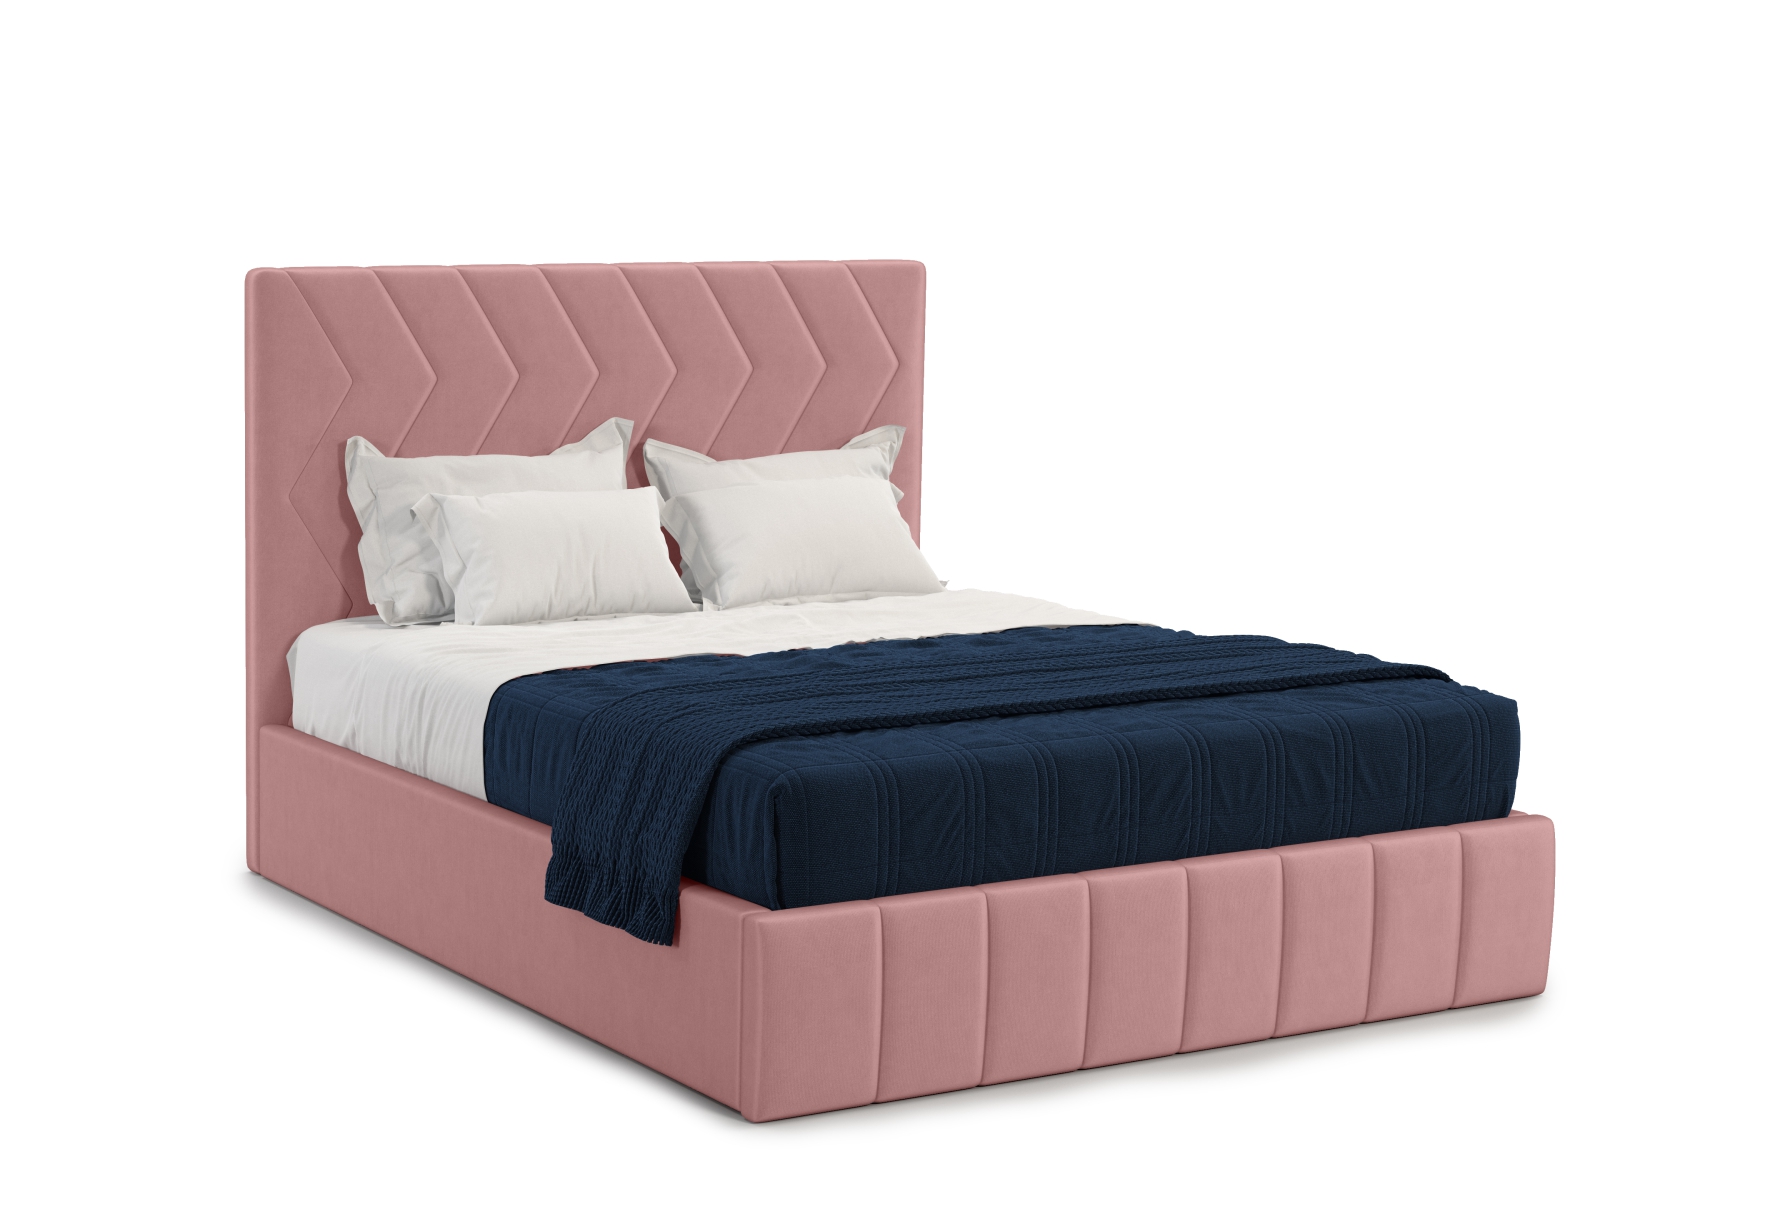 Мягкая кровать Грейс 140*200 (подъемник), цвет bingo mauve - фото 1